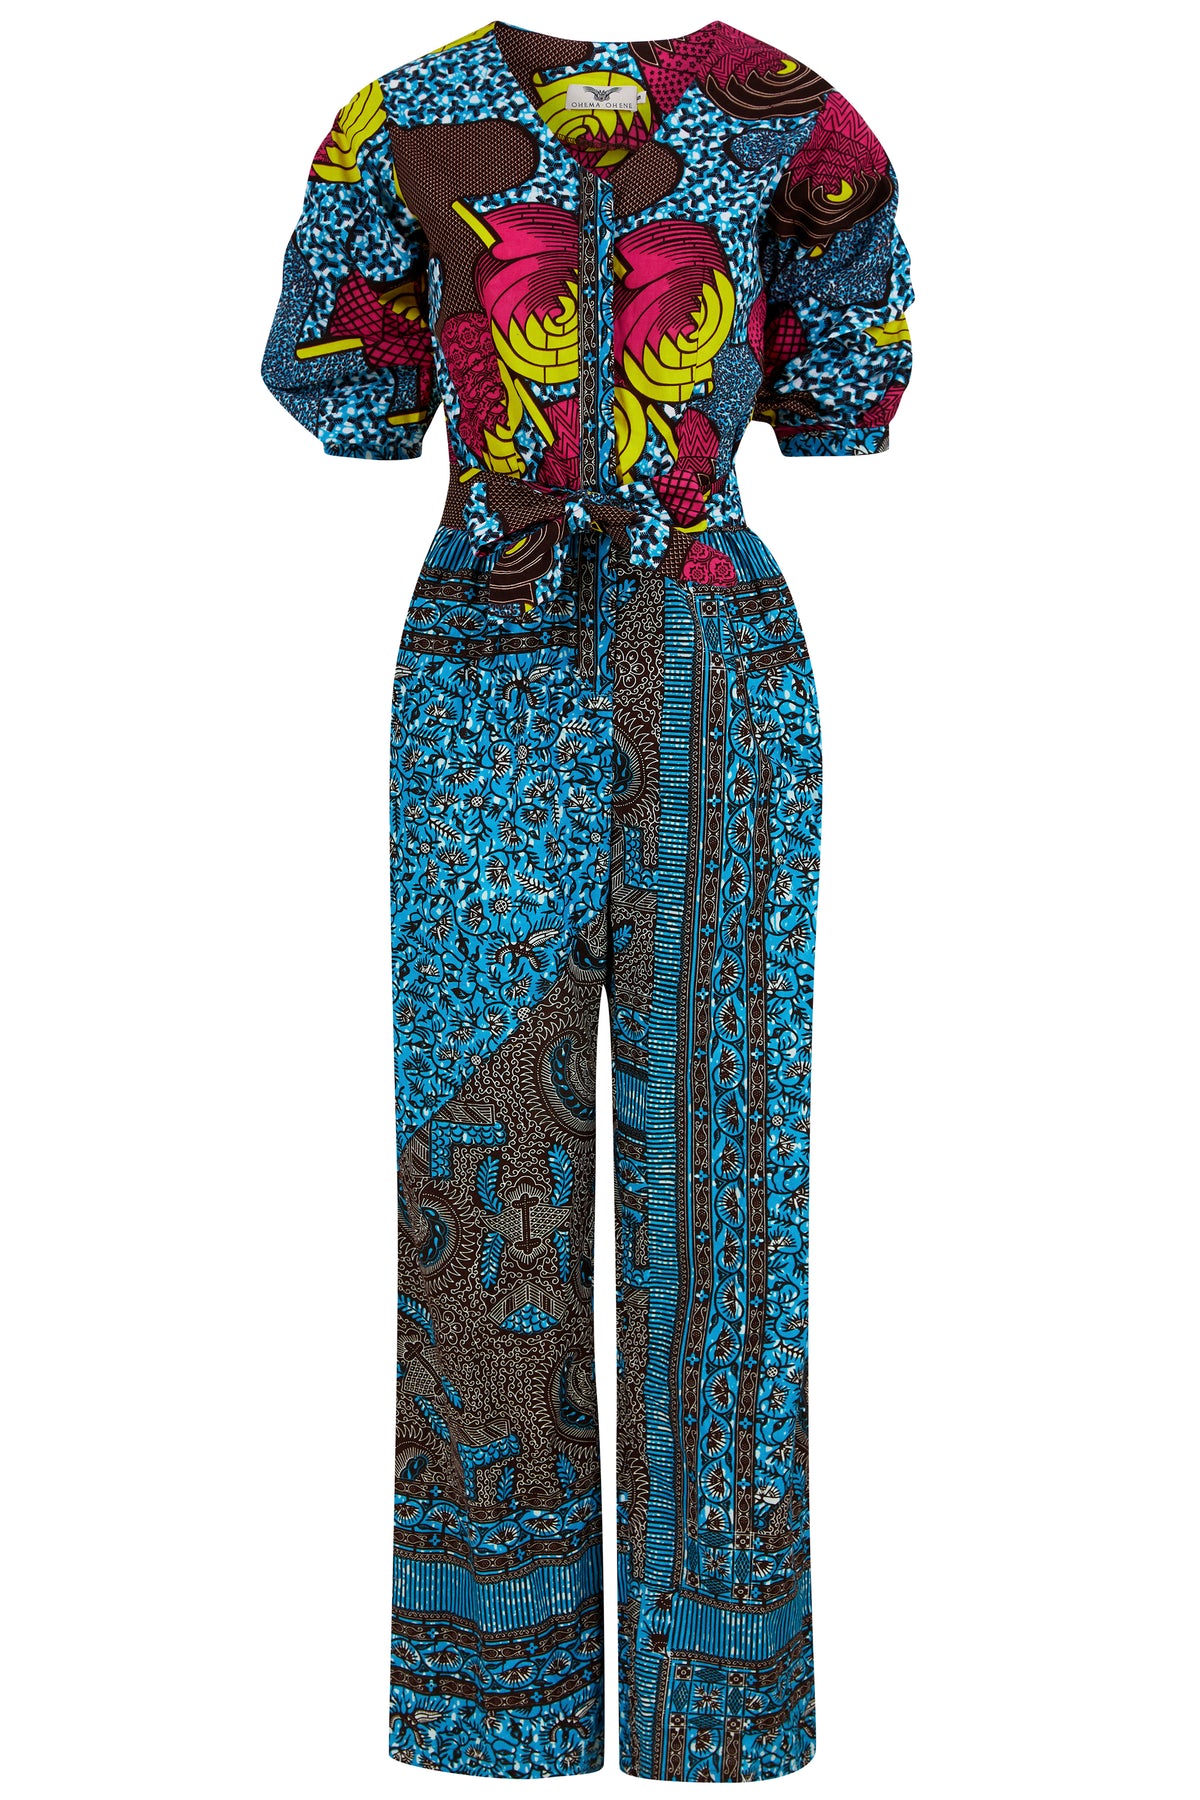 African Print Romper Suit/Playsuit - Eva - Jamii